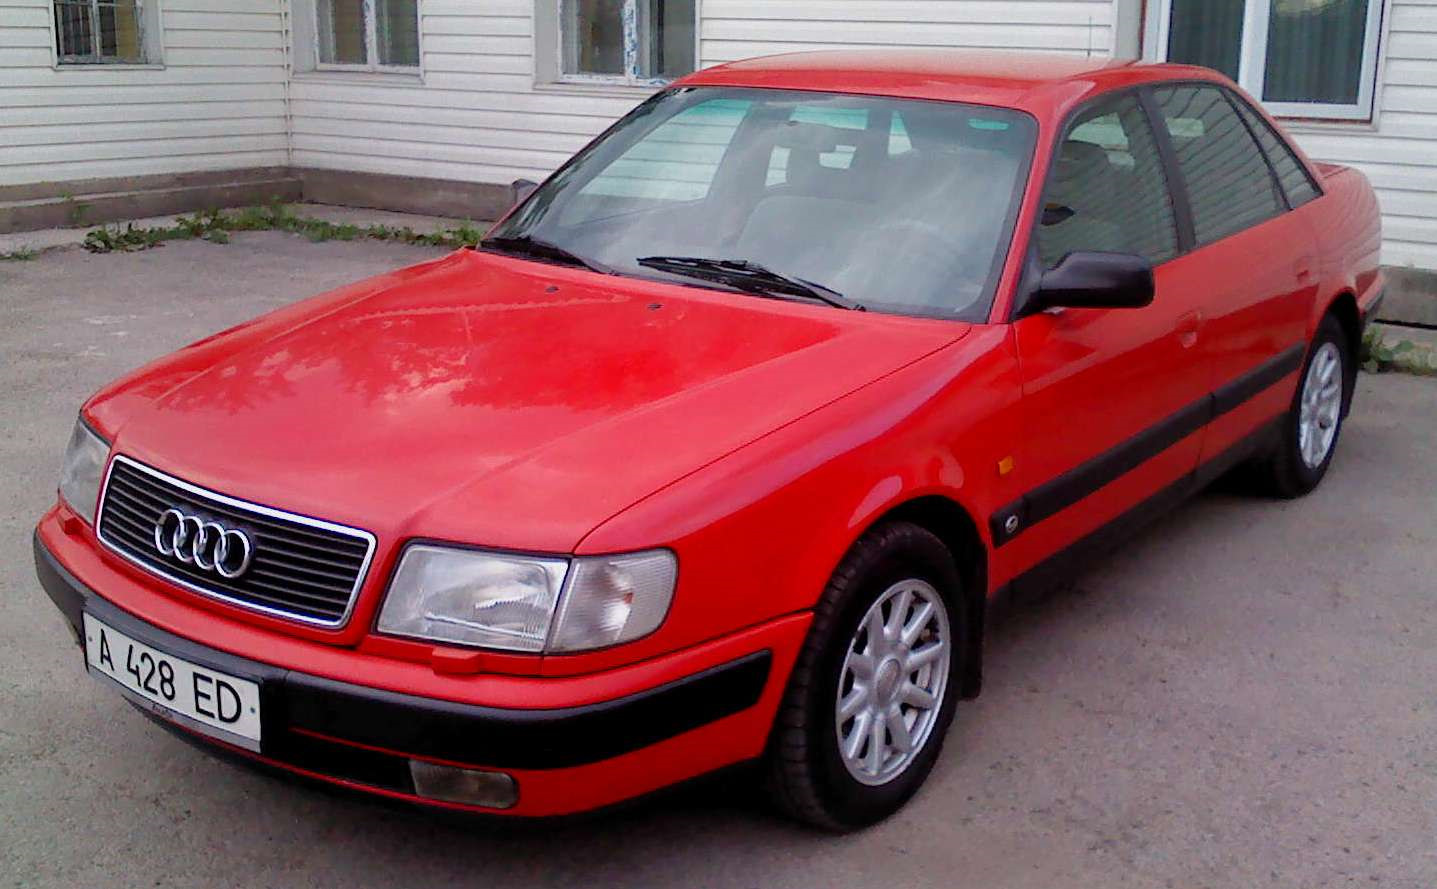 Купить ауди бу в белоруссии. Audi 100 c4 Red. Ауди 100 с4. Ауди 100 с4 красная. Ауди 100 в 45 кузове красная.